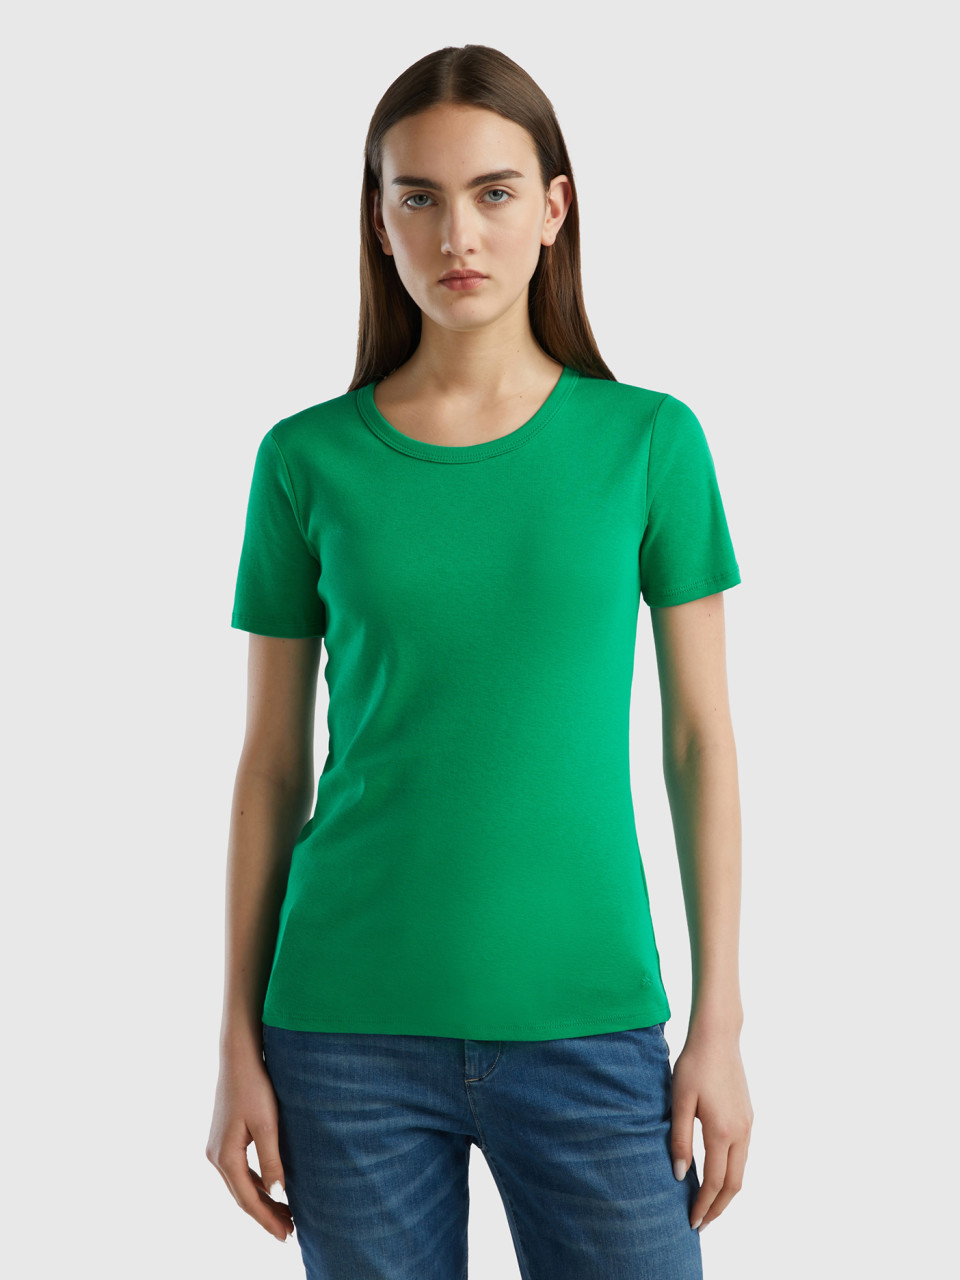 Benetton, Long Fiber Cotton T-shirt, Green, Women